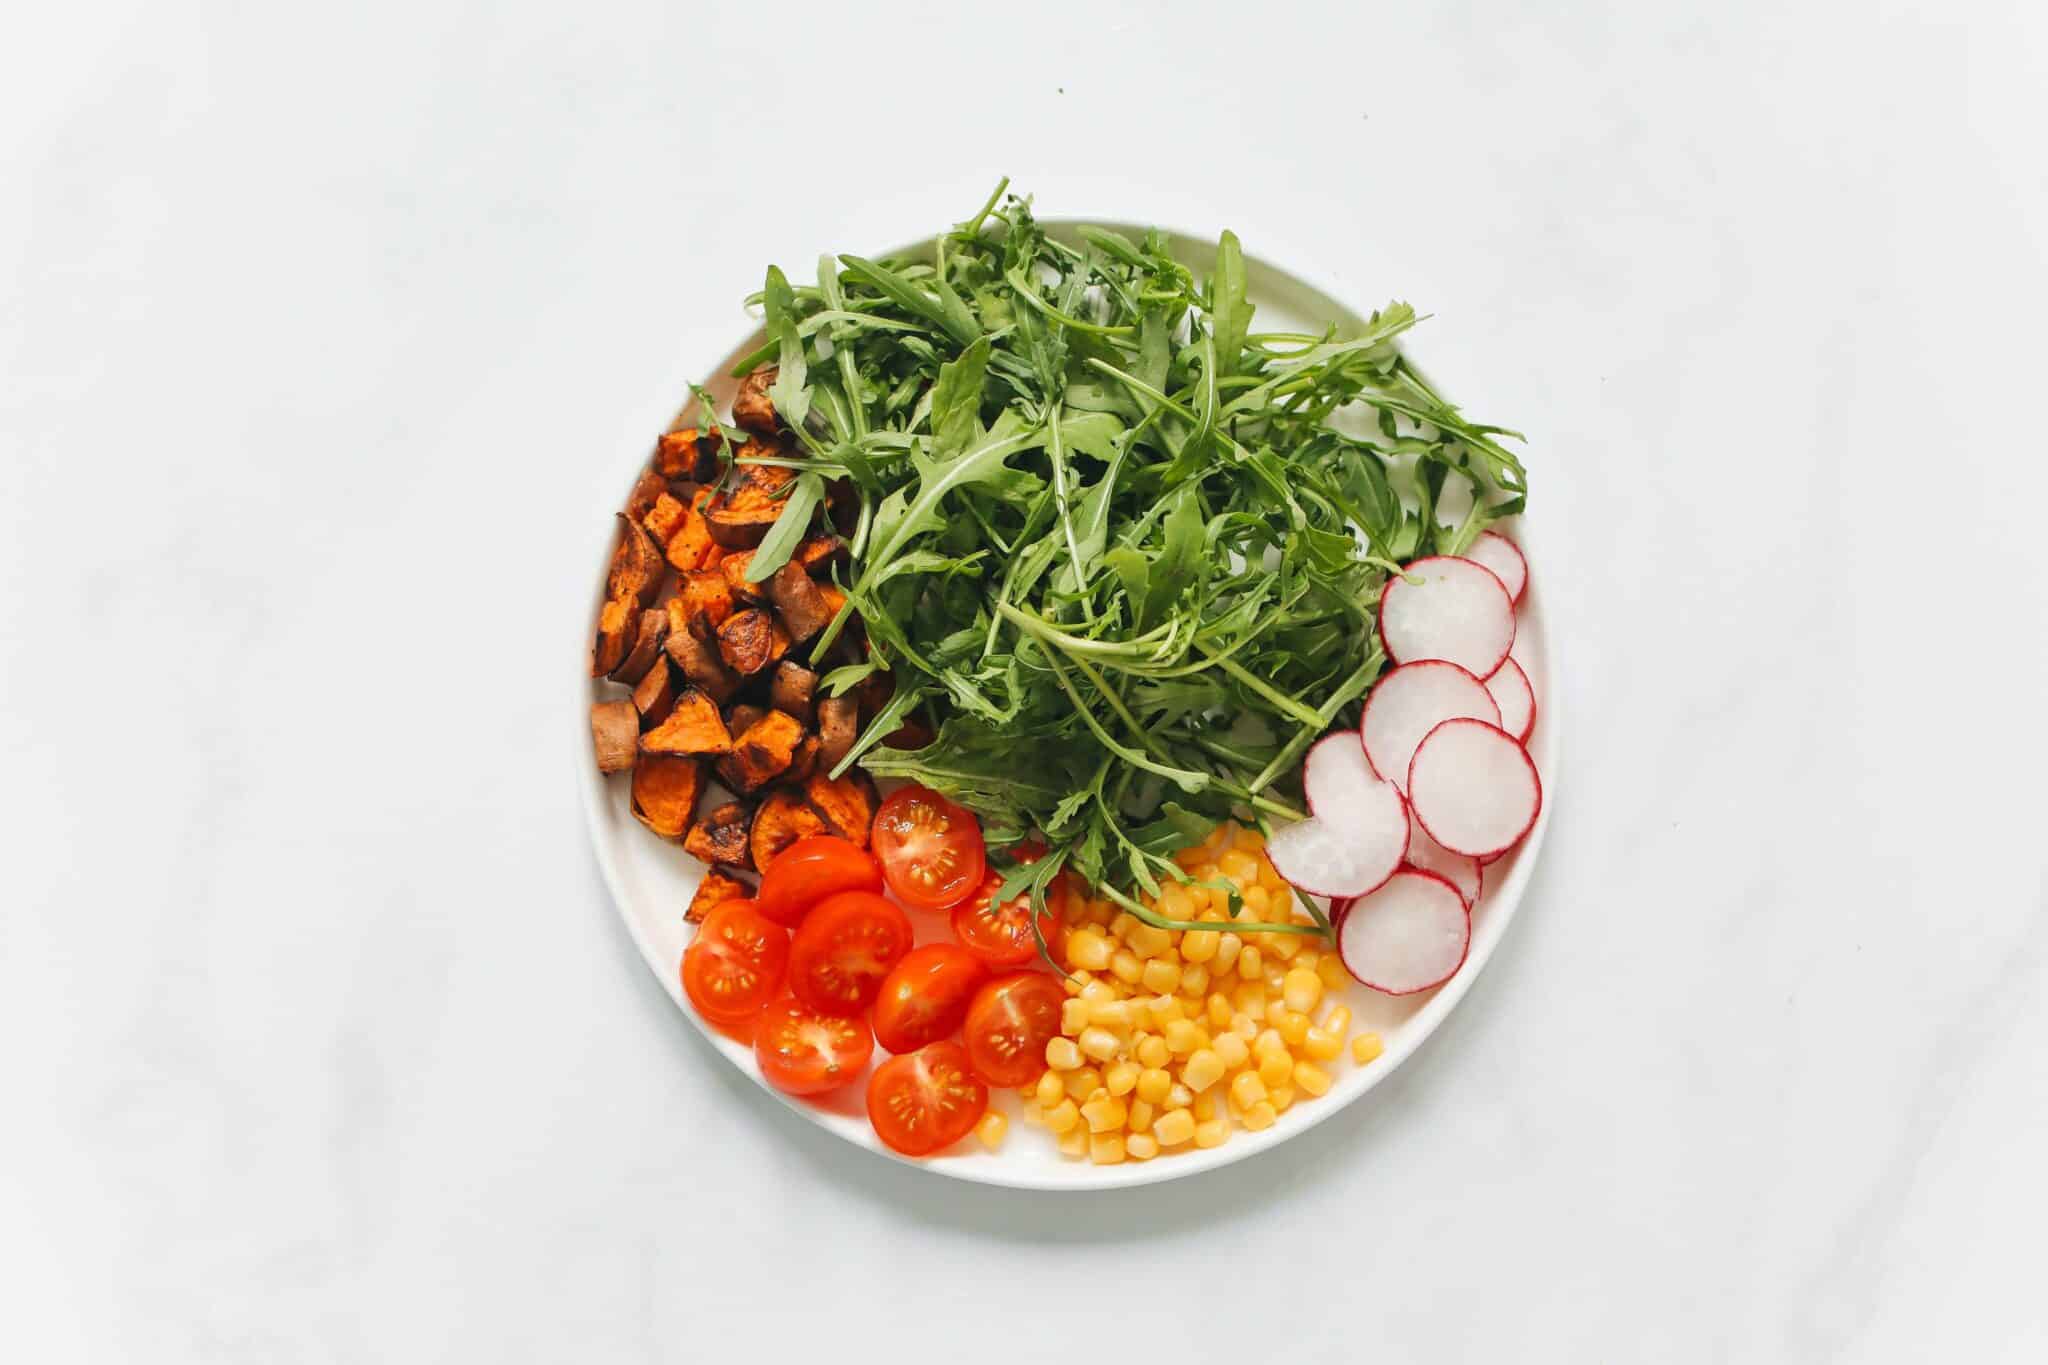 arugula salad on white background